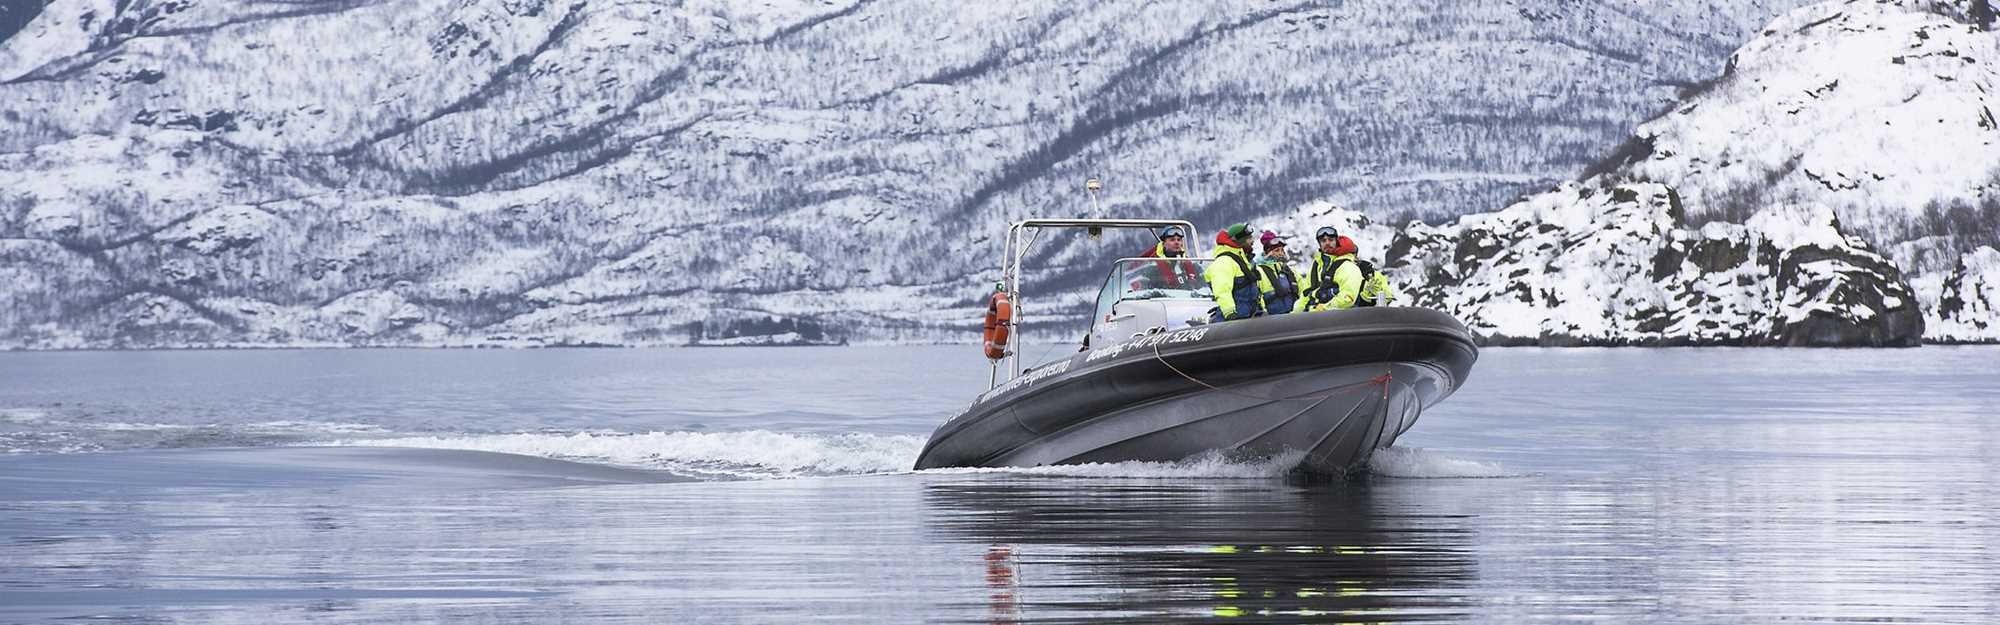 Mennesker i en båt med snødekkede fjell i bakgrunnen. Foto.